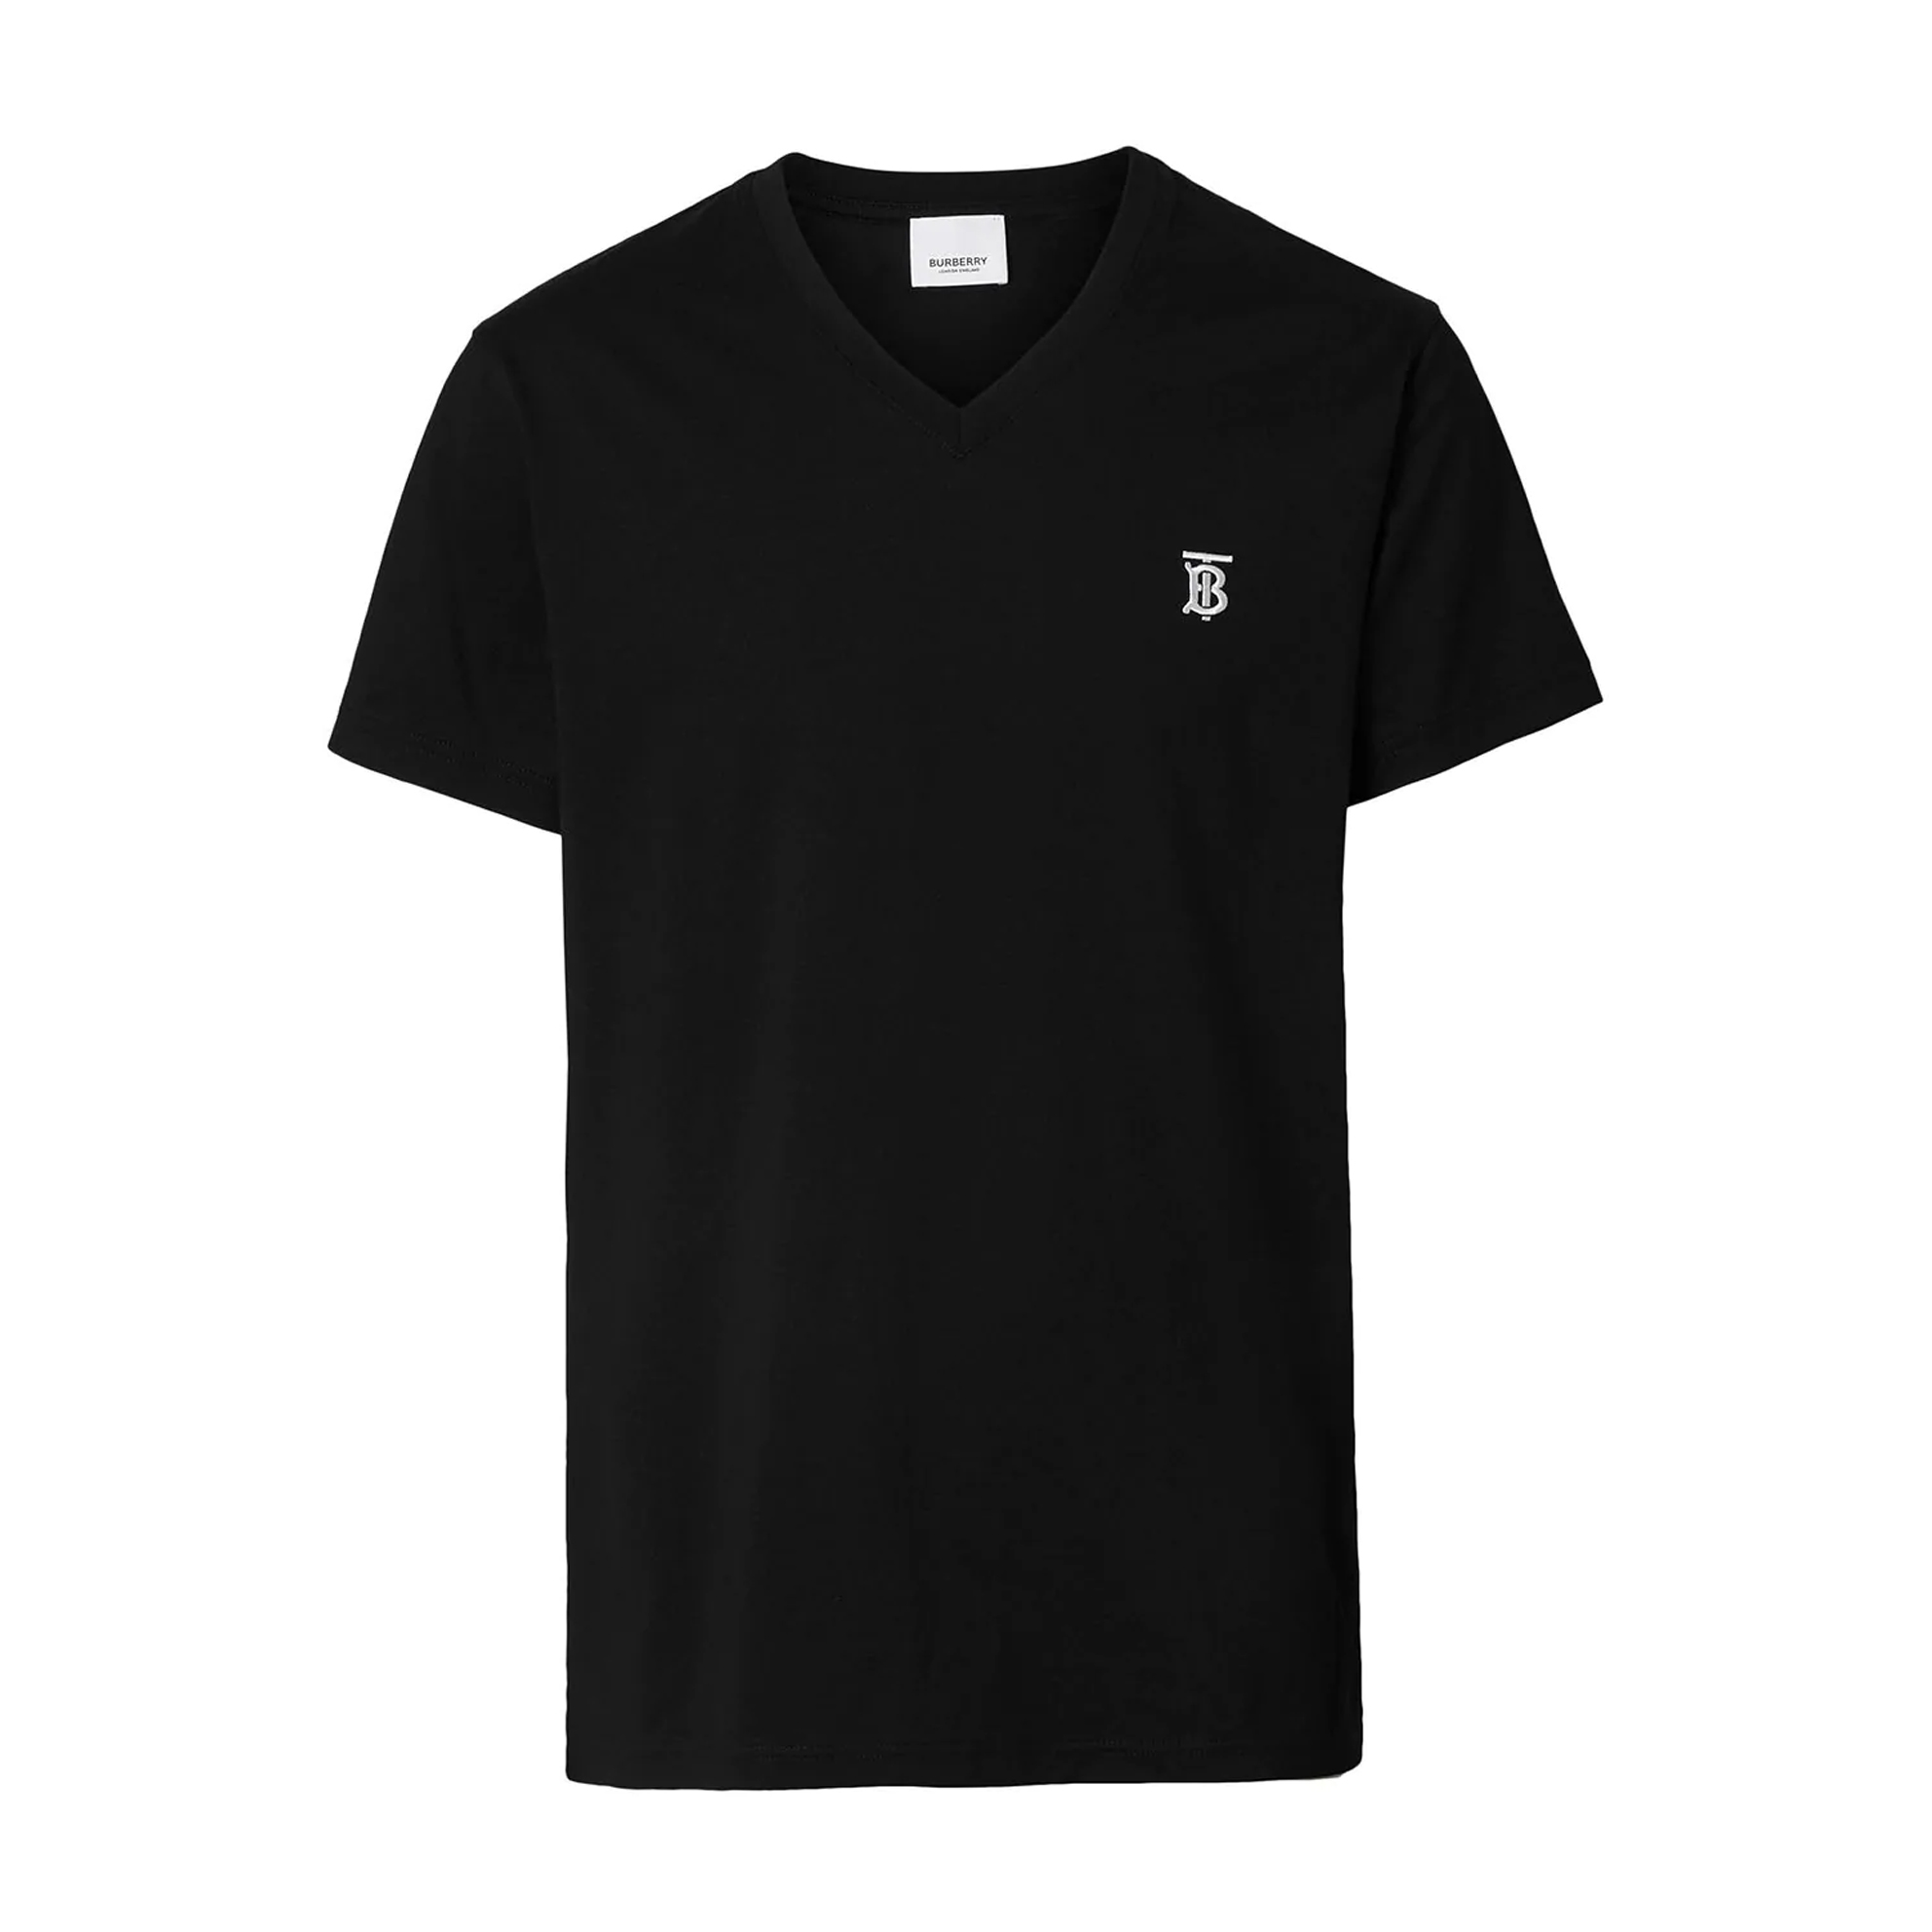 Image 1 of バーバリーVネック Tシャツ MARLET マーレット ブラック メンズ 8017255 BLK オーバーサイズ